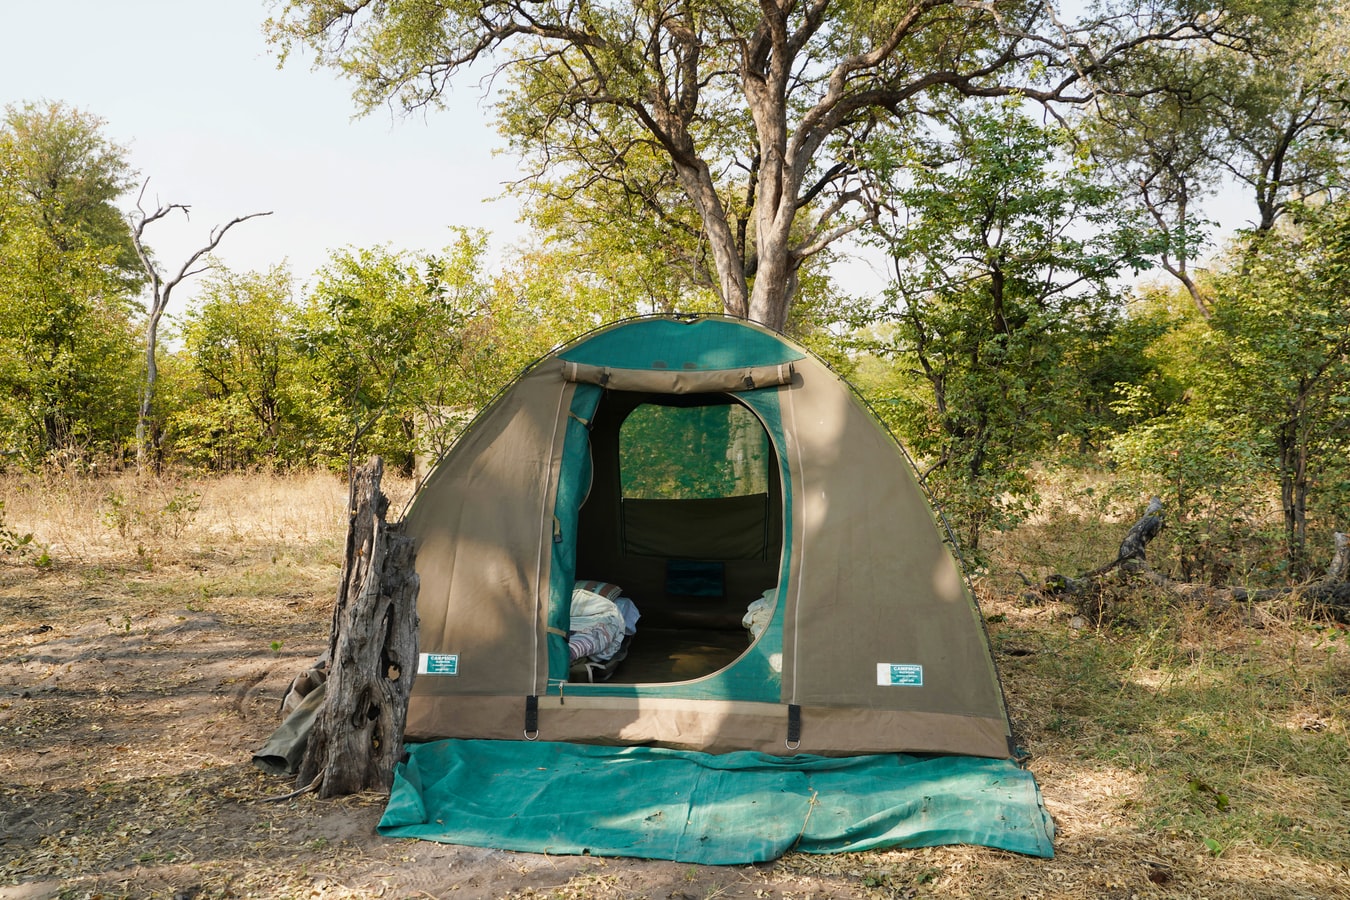 Wyjazd pod namiot – co ze sobą zabrać?